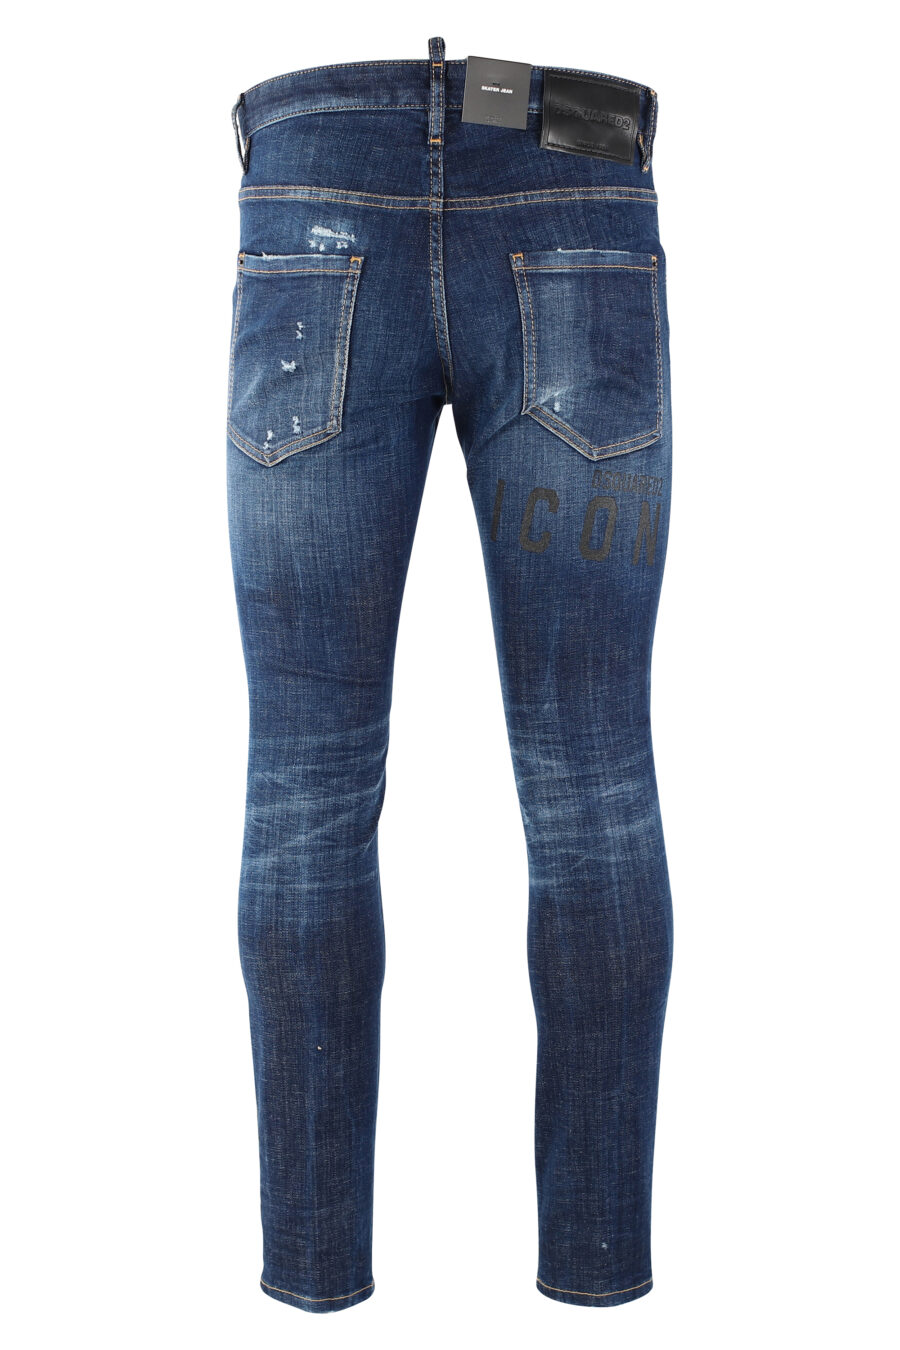 Pantalón vaquero "icon skater jean" azul oscuro semidesgastado - IMG 9658